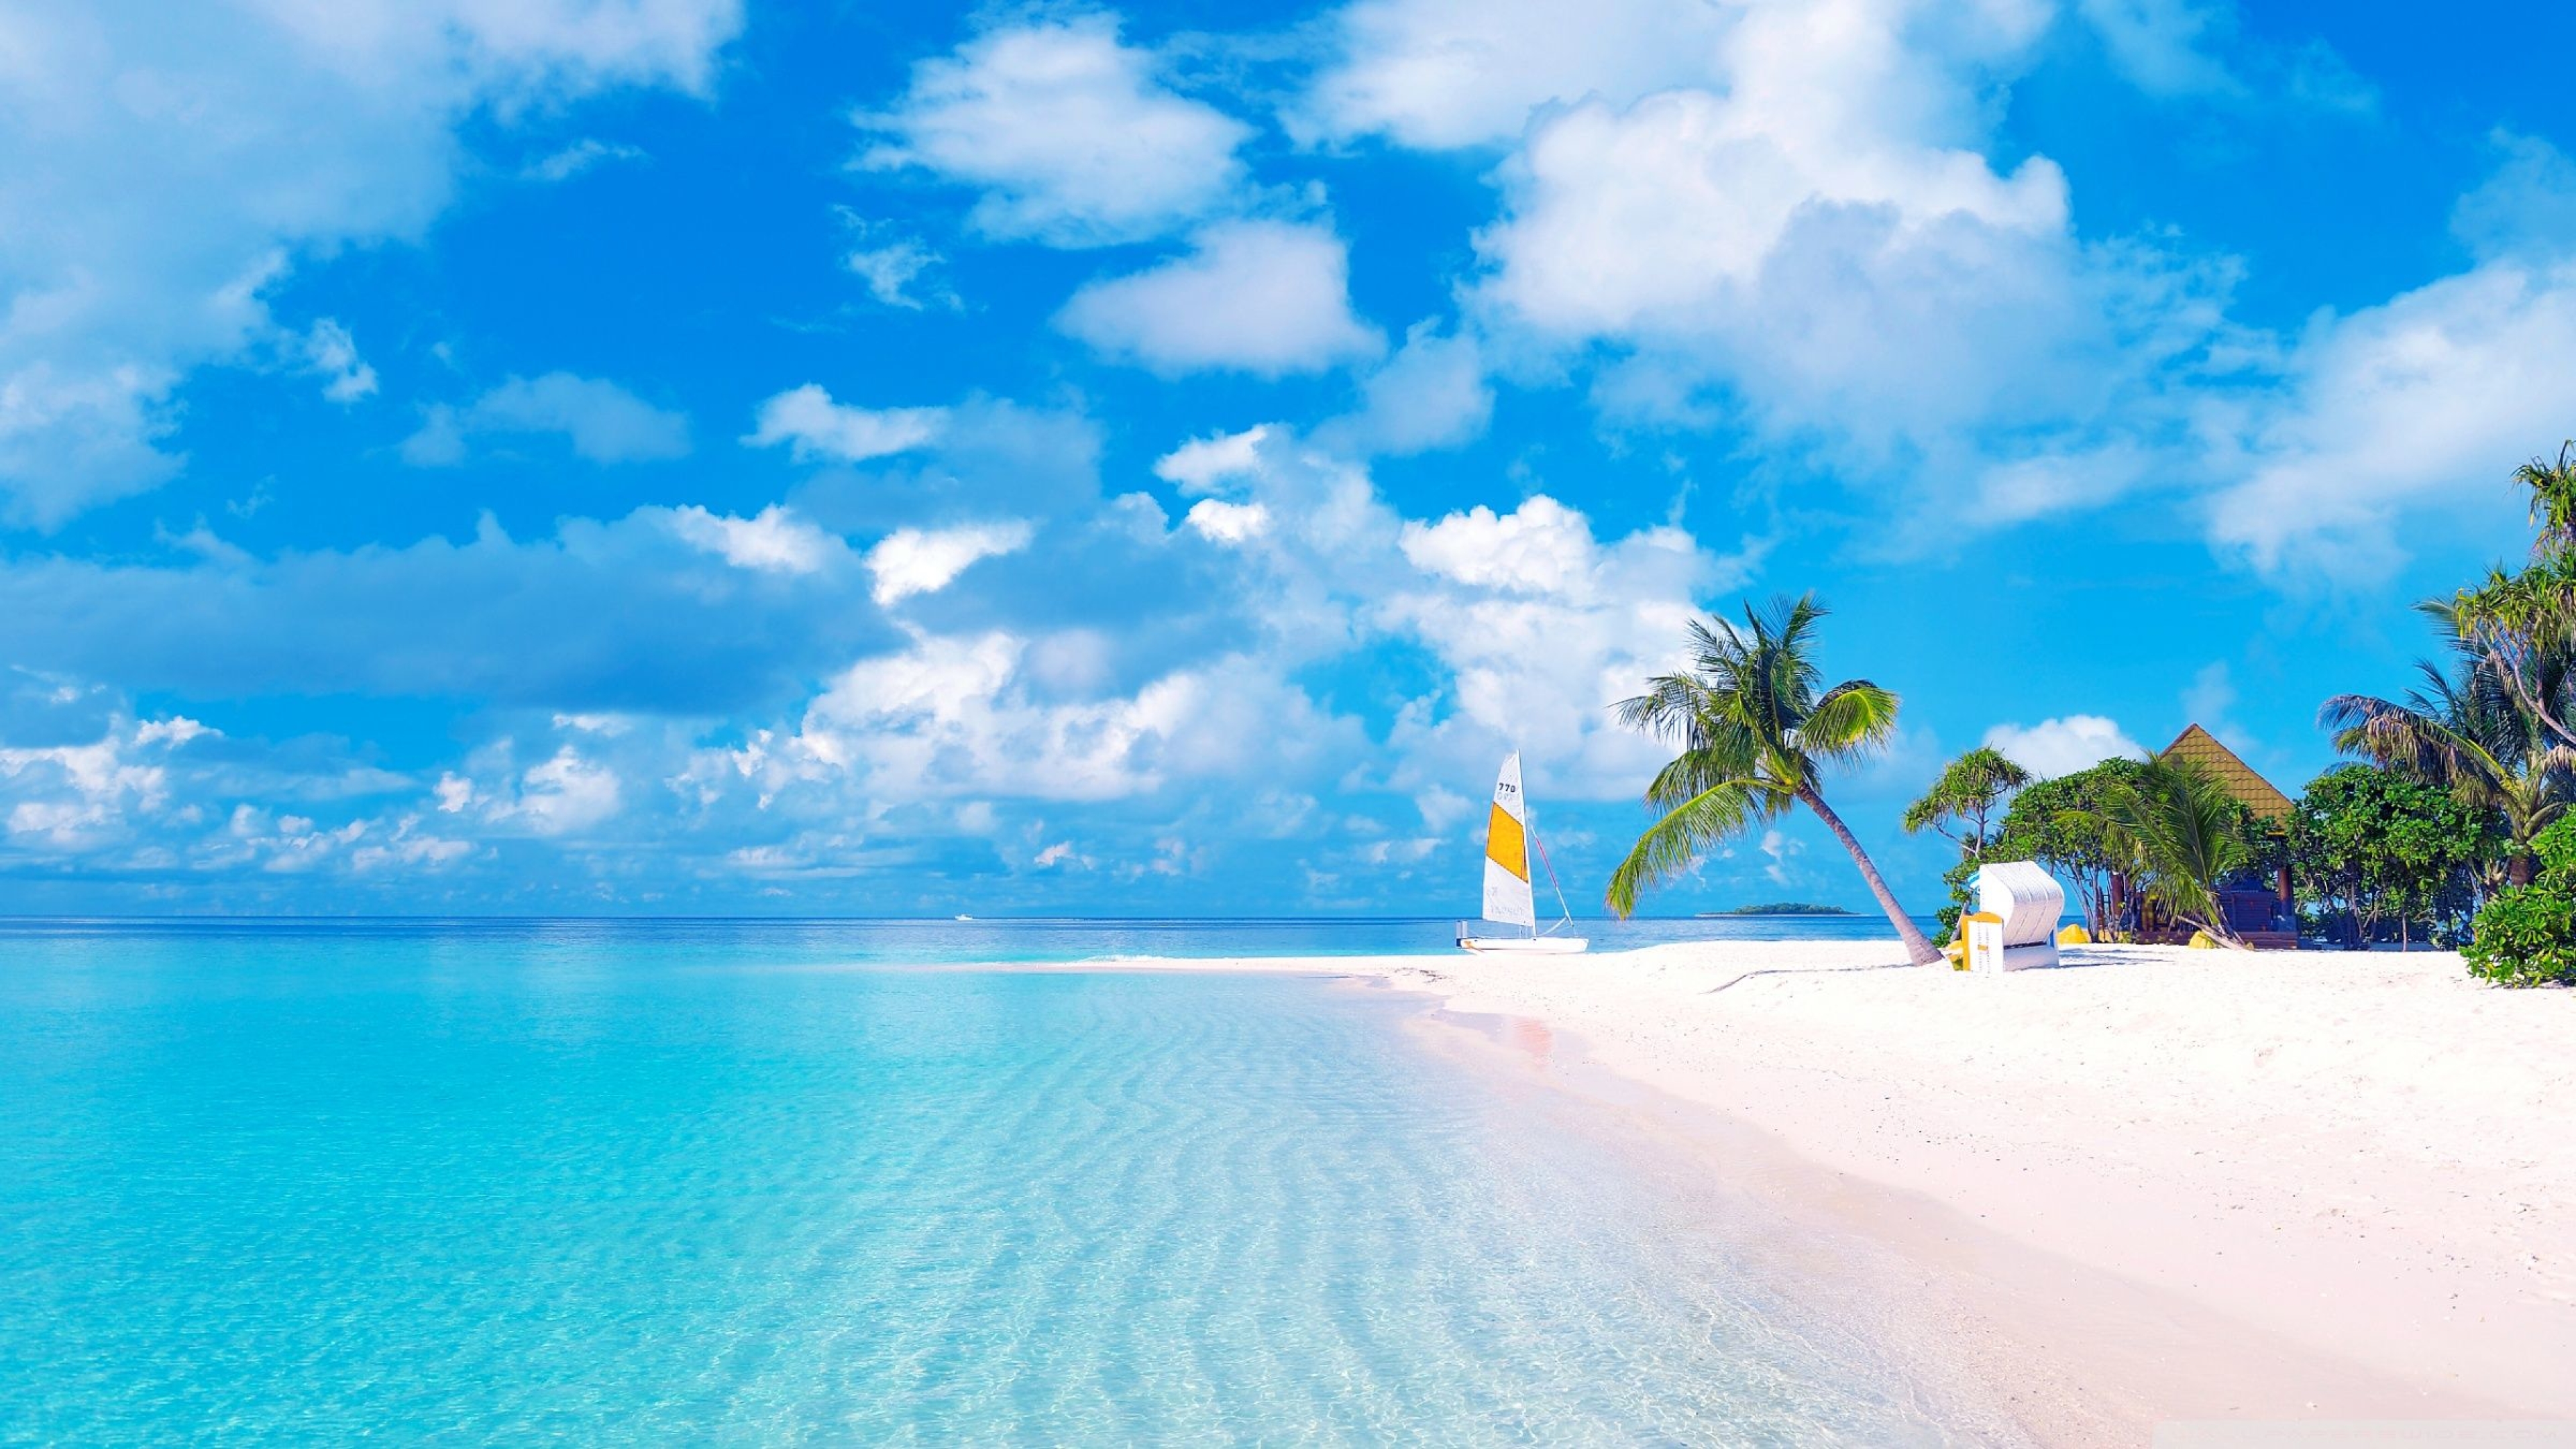 Море экзотика. Парадиз остров Карибского моря. Канары, Карибы, Мальдивы, Сейшелы.. Гавайи Мальдивы Карибы. Море пляж.